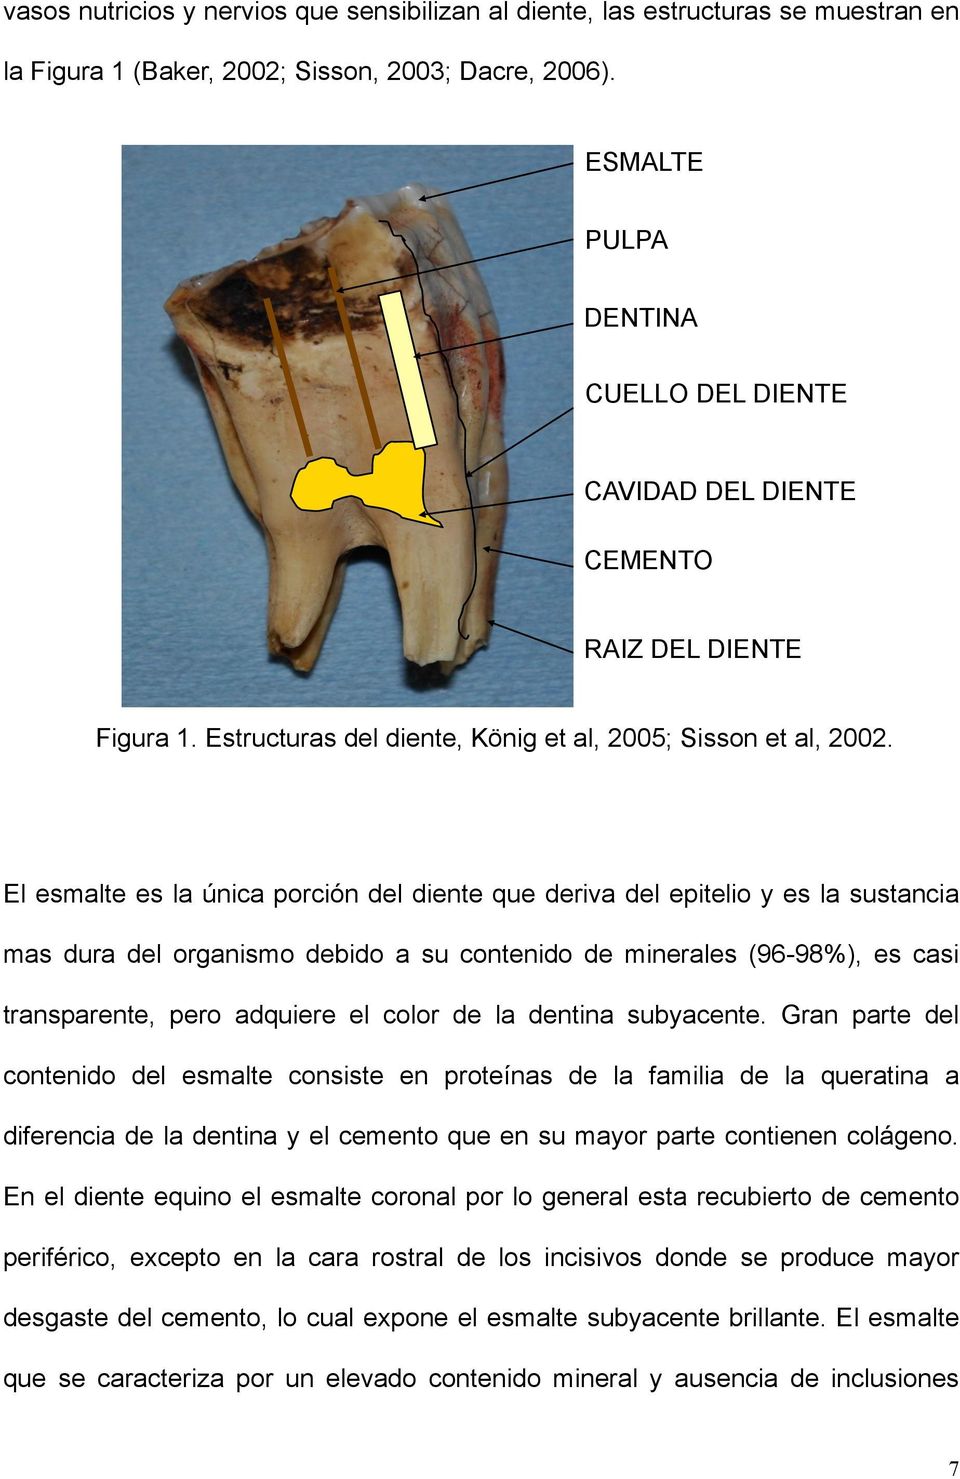 El esmalte es la única porción del diente que deriva del epitelio y es la sustancia mas dura del organismo debido a su contenido de minerales (96-98%), es casi transparente, pero adquiere el color de